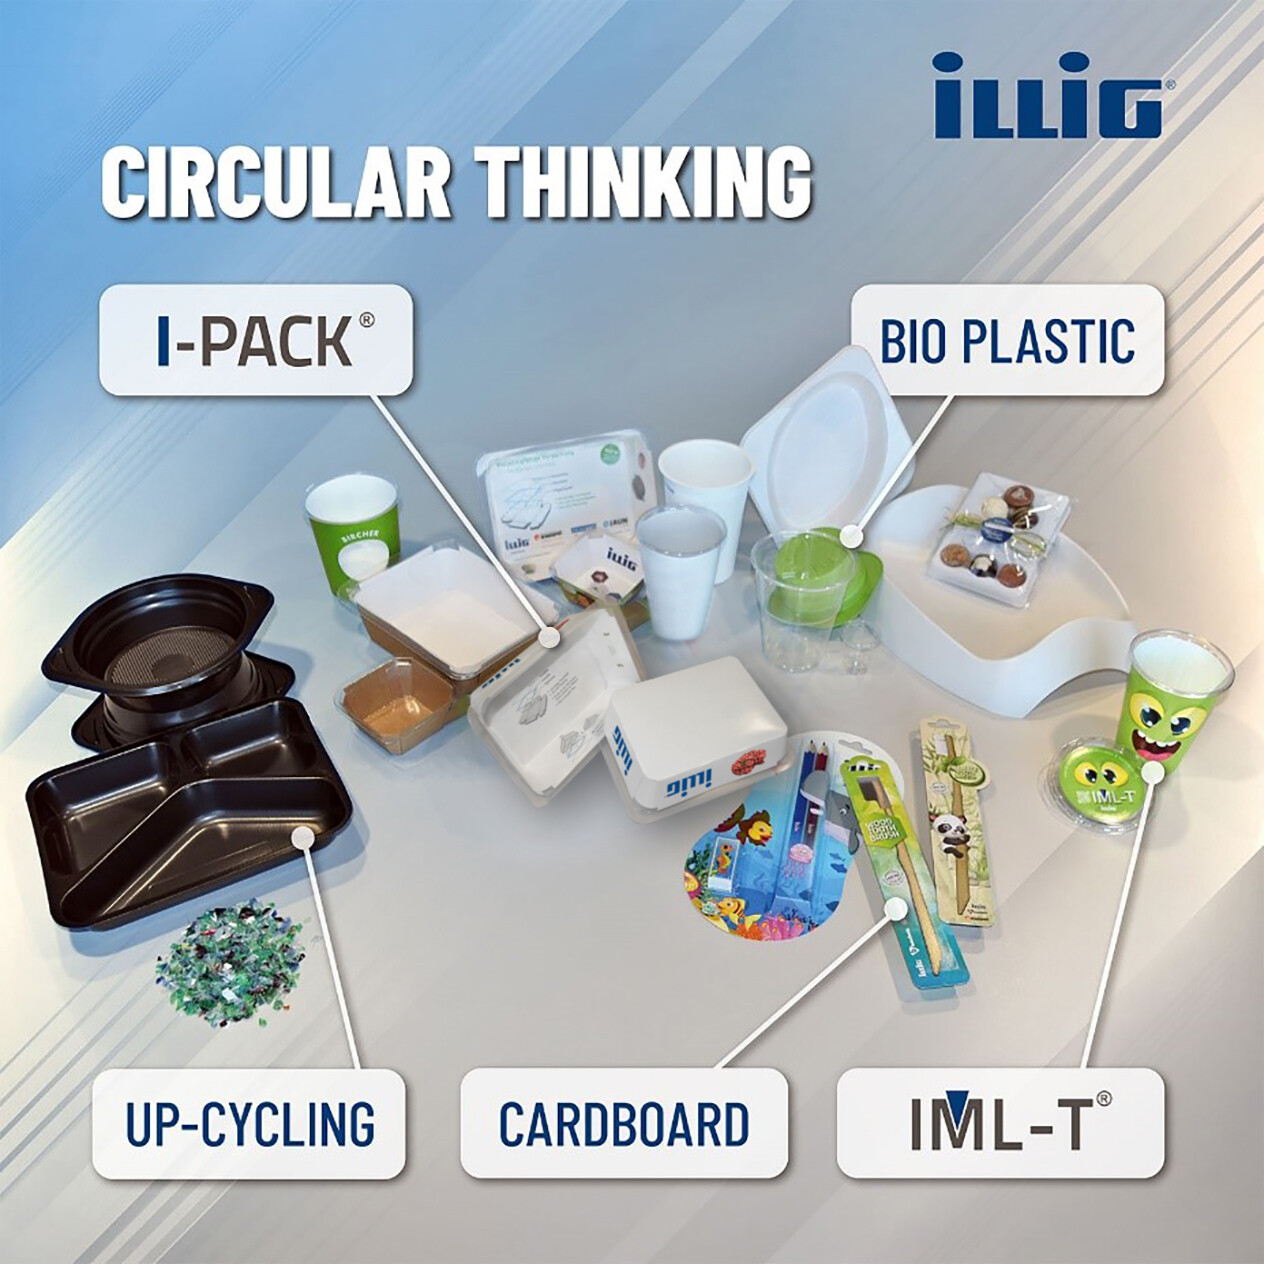 ILLIG entwickelt mit der Verpackungsentwicklung Pactivity® ressourceneffiziente und nachhaltige Lösungen auch zur Rückführung in die Kreislaufwirtschaft.